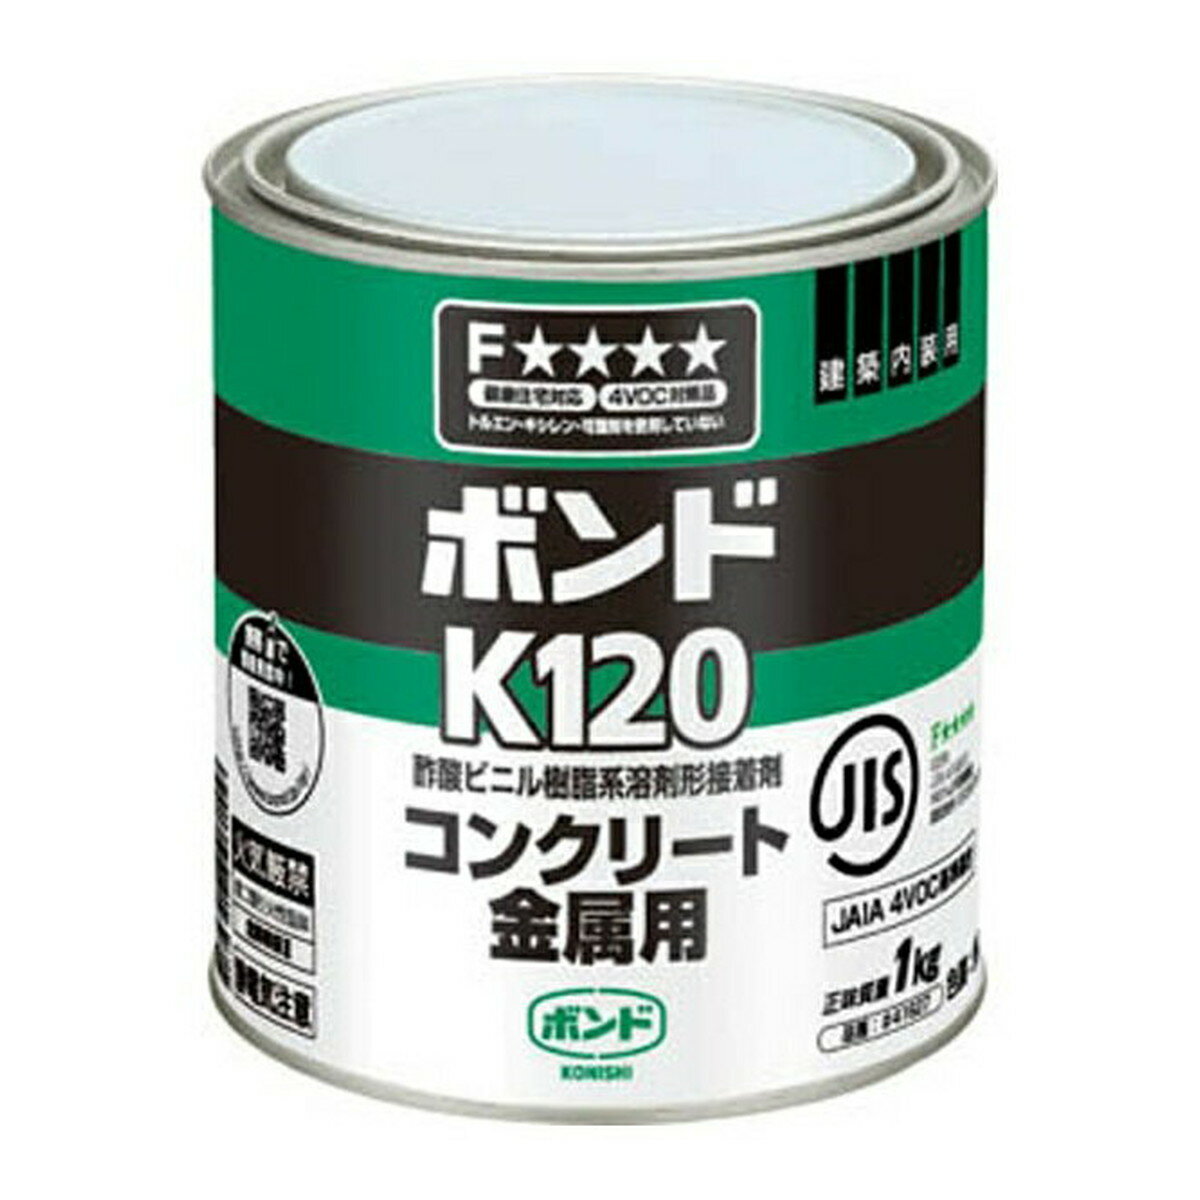 【送料込・まとめ買い×6個セット】コニシ ボンド K120 コンクリート金属用 1kg 缶